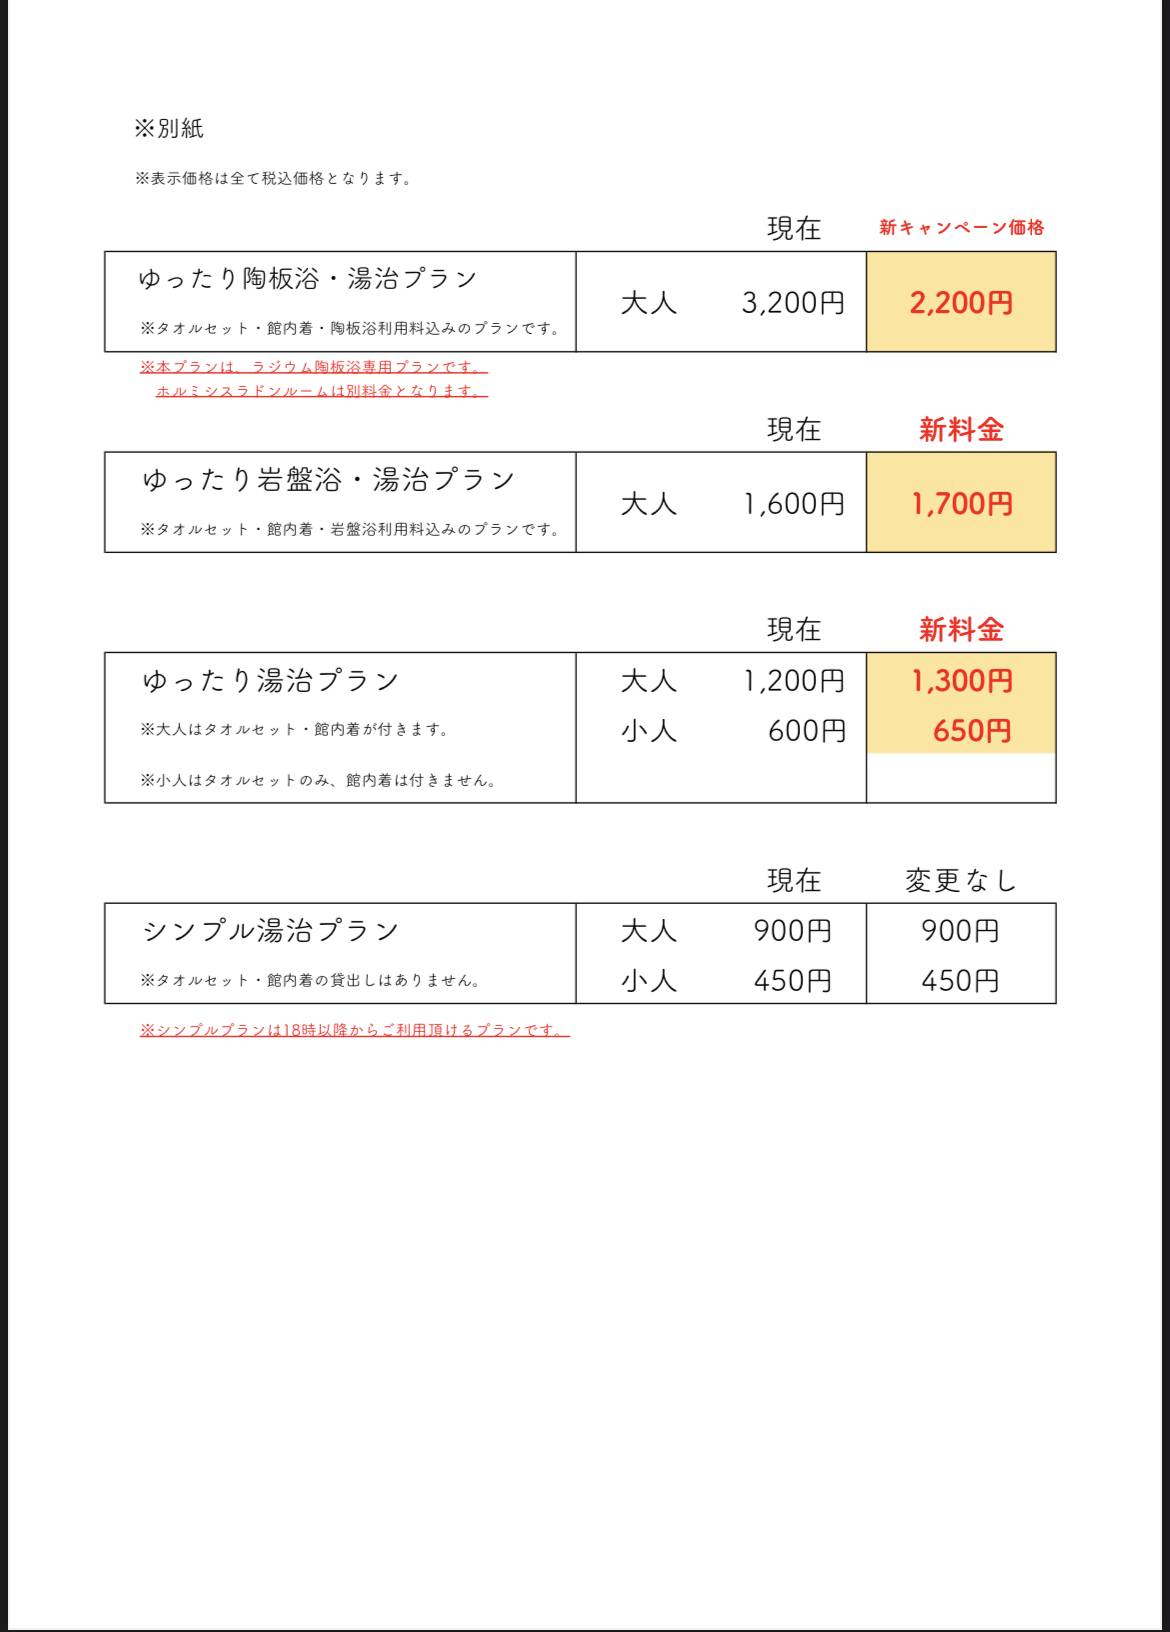 花和楽の湯・入館料の価格改定のお知らせ